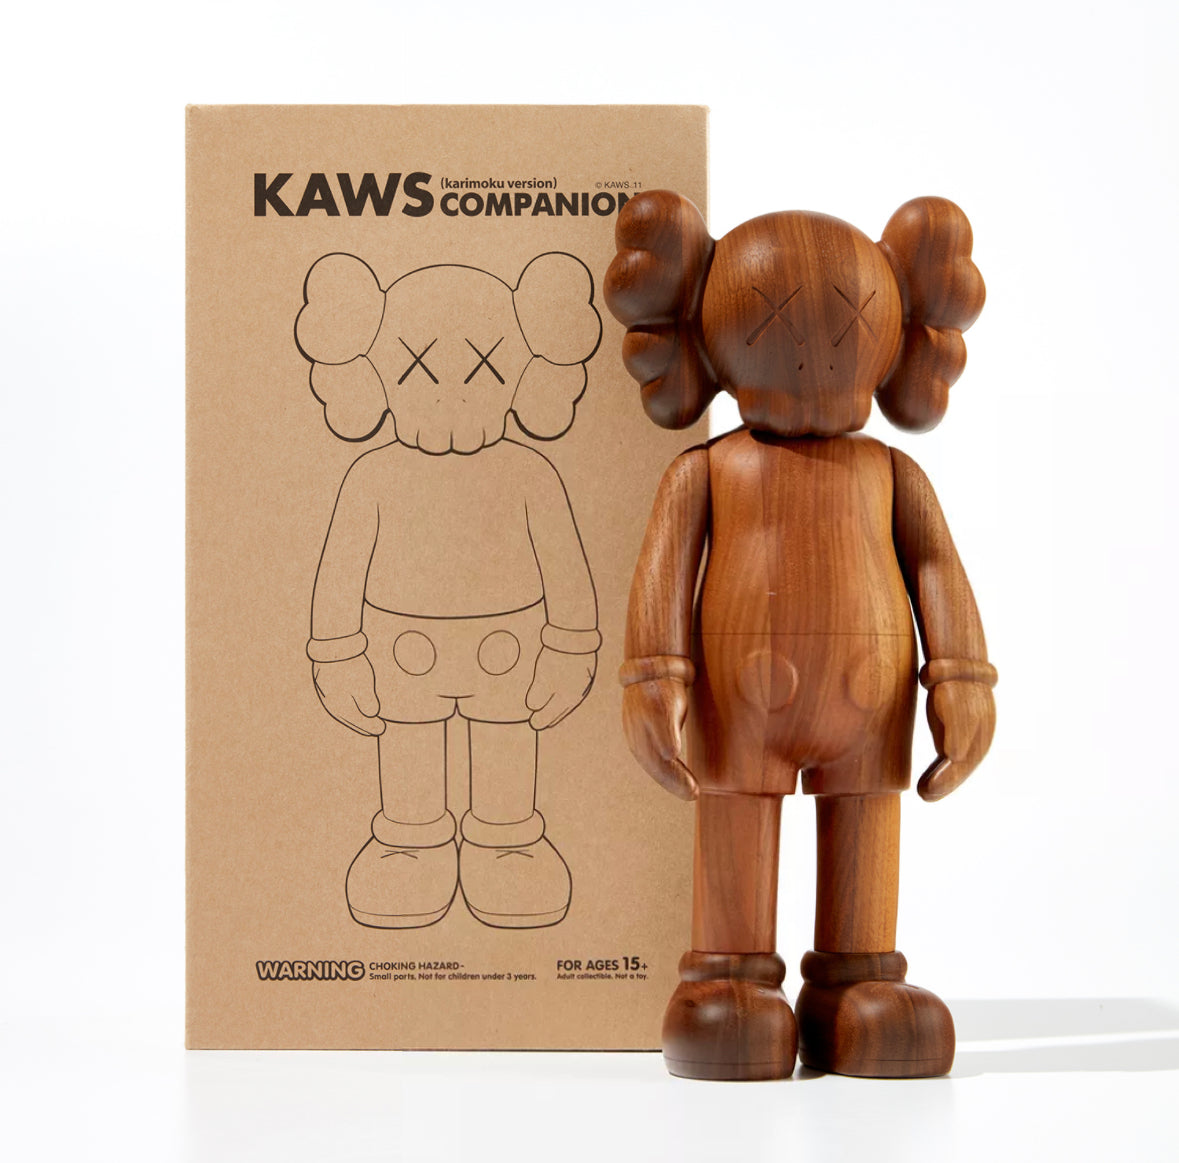 KAWS Companion Karimoku Version 2011